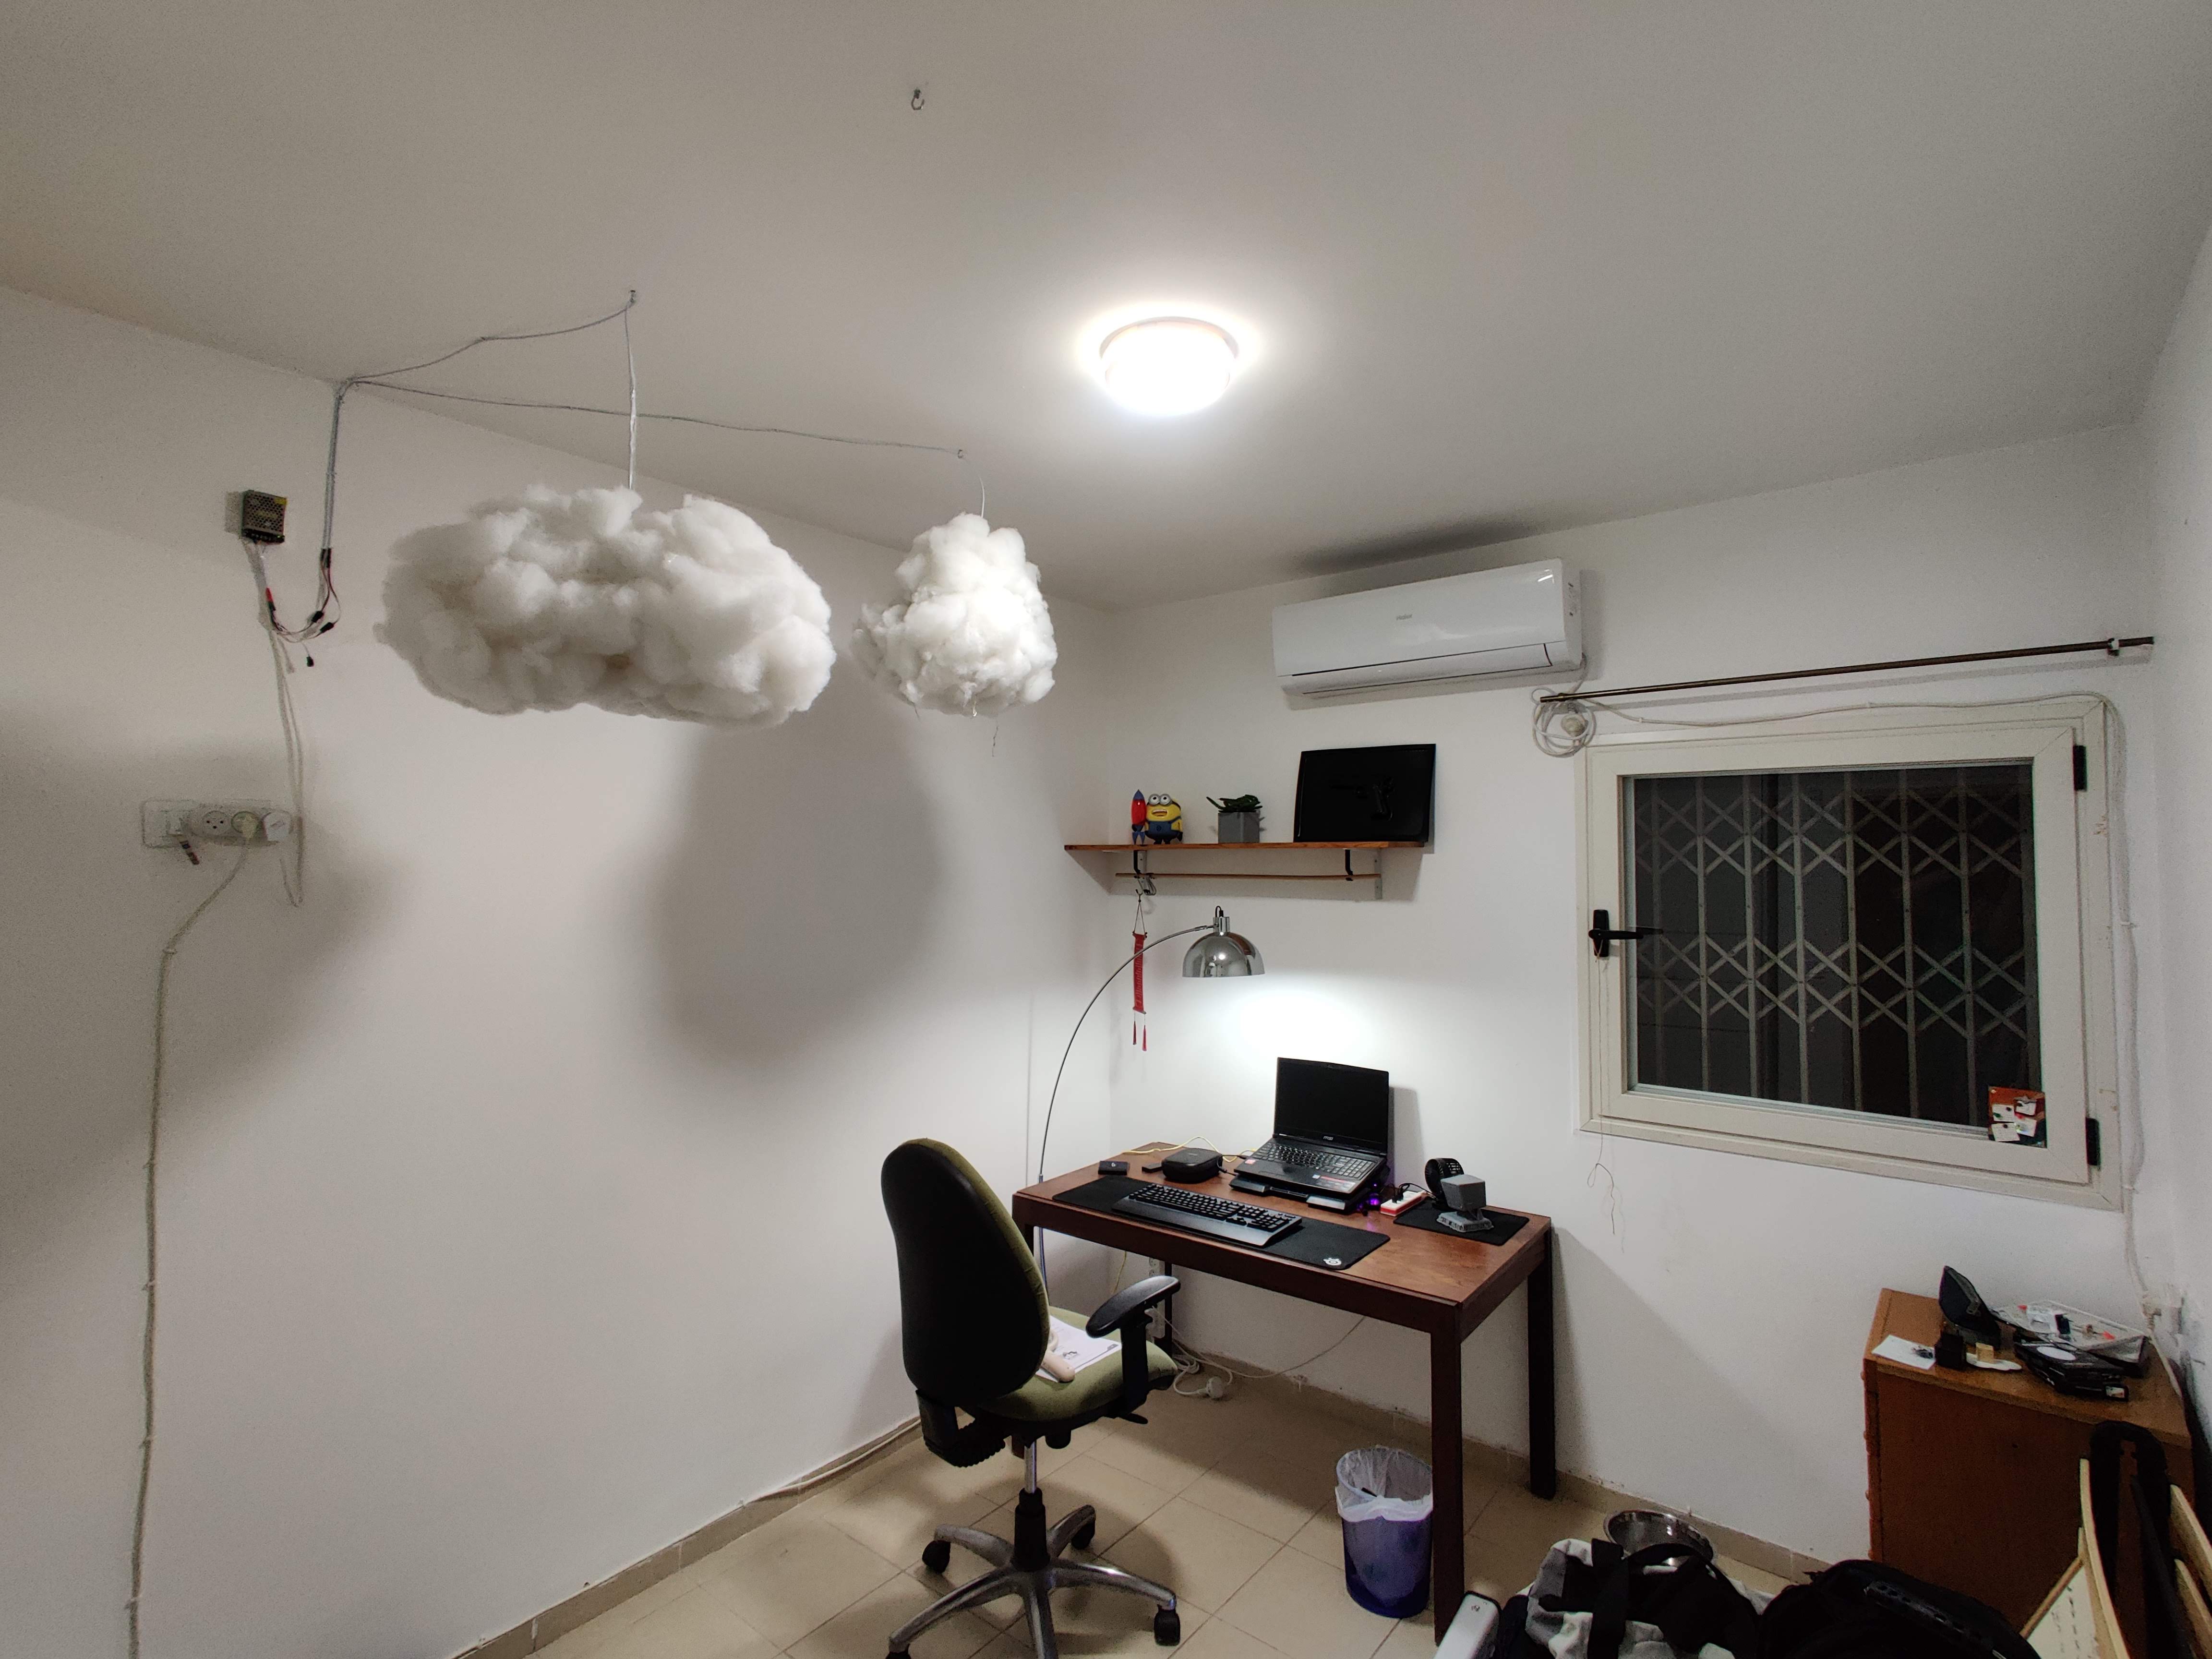 Today I made a smart cloud-like lamp